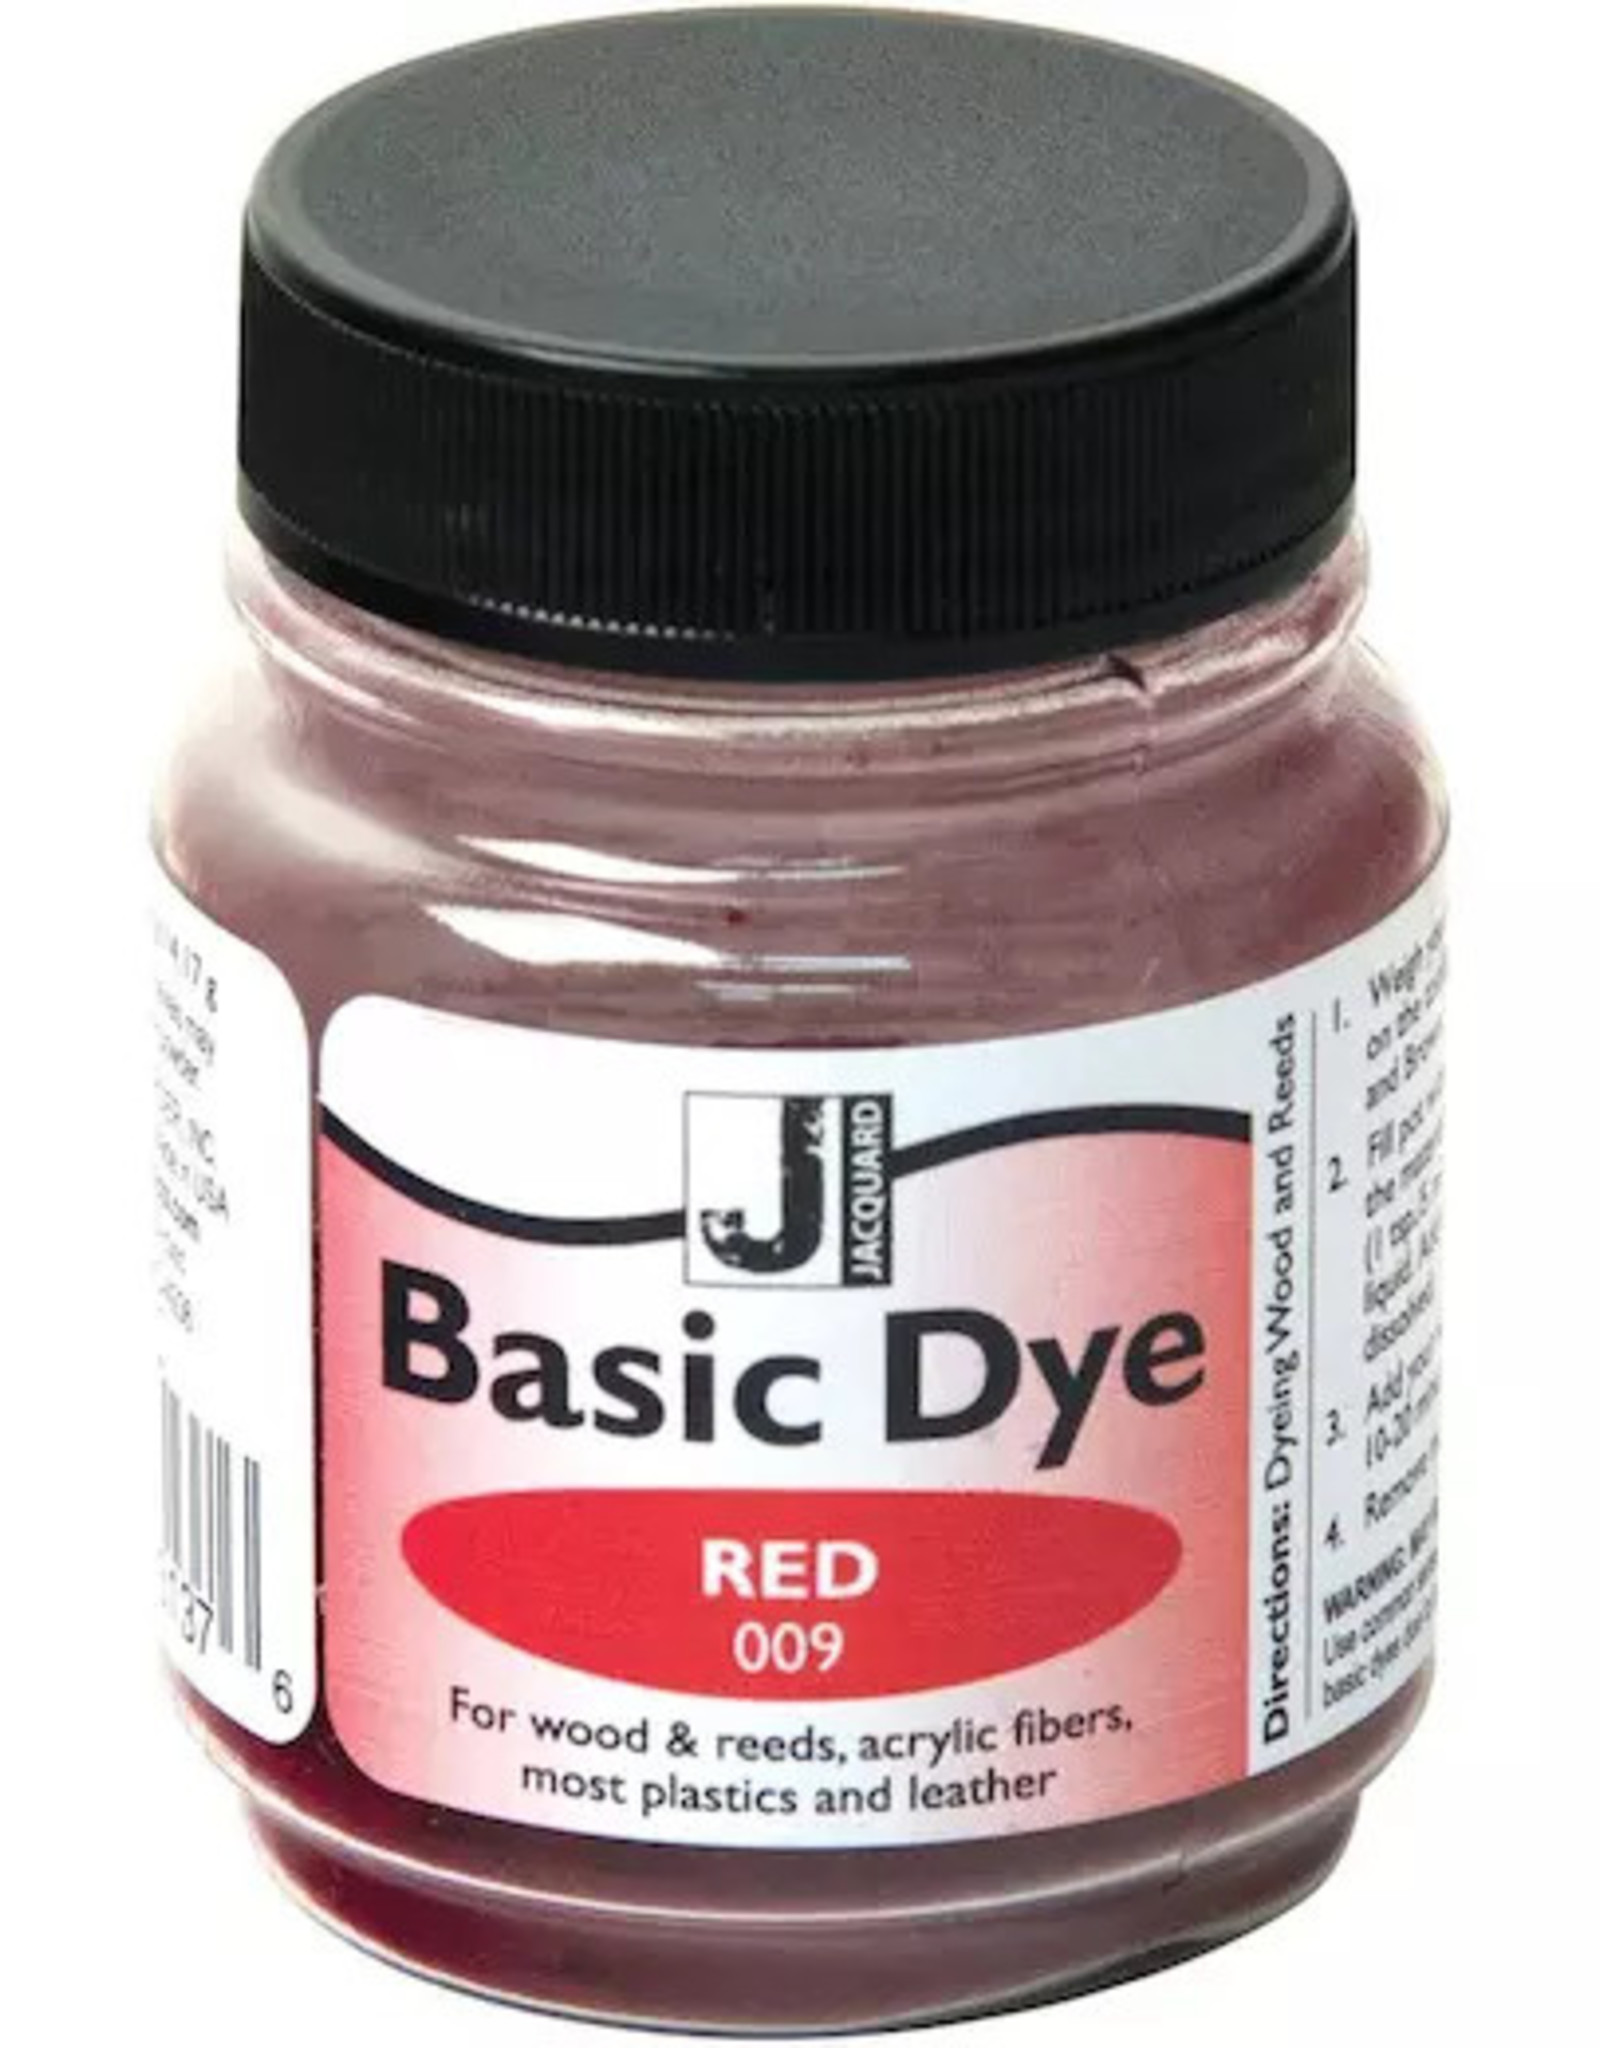 Jacquard Basic Dye Rood